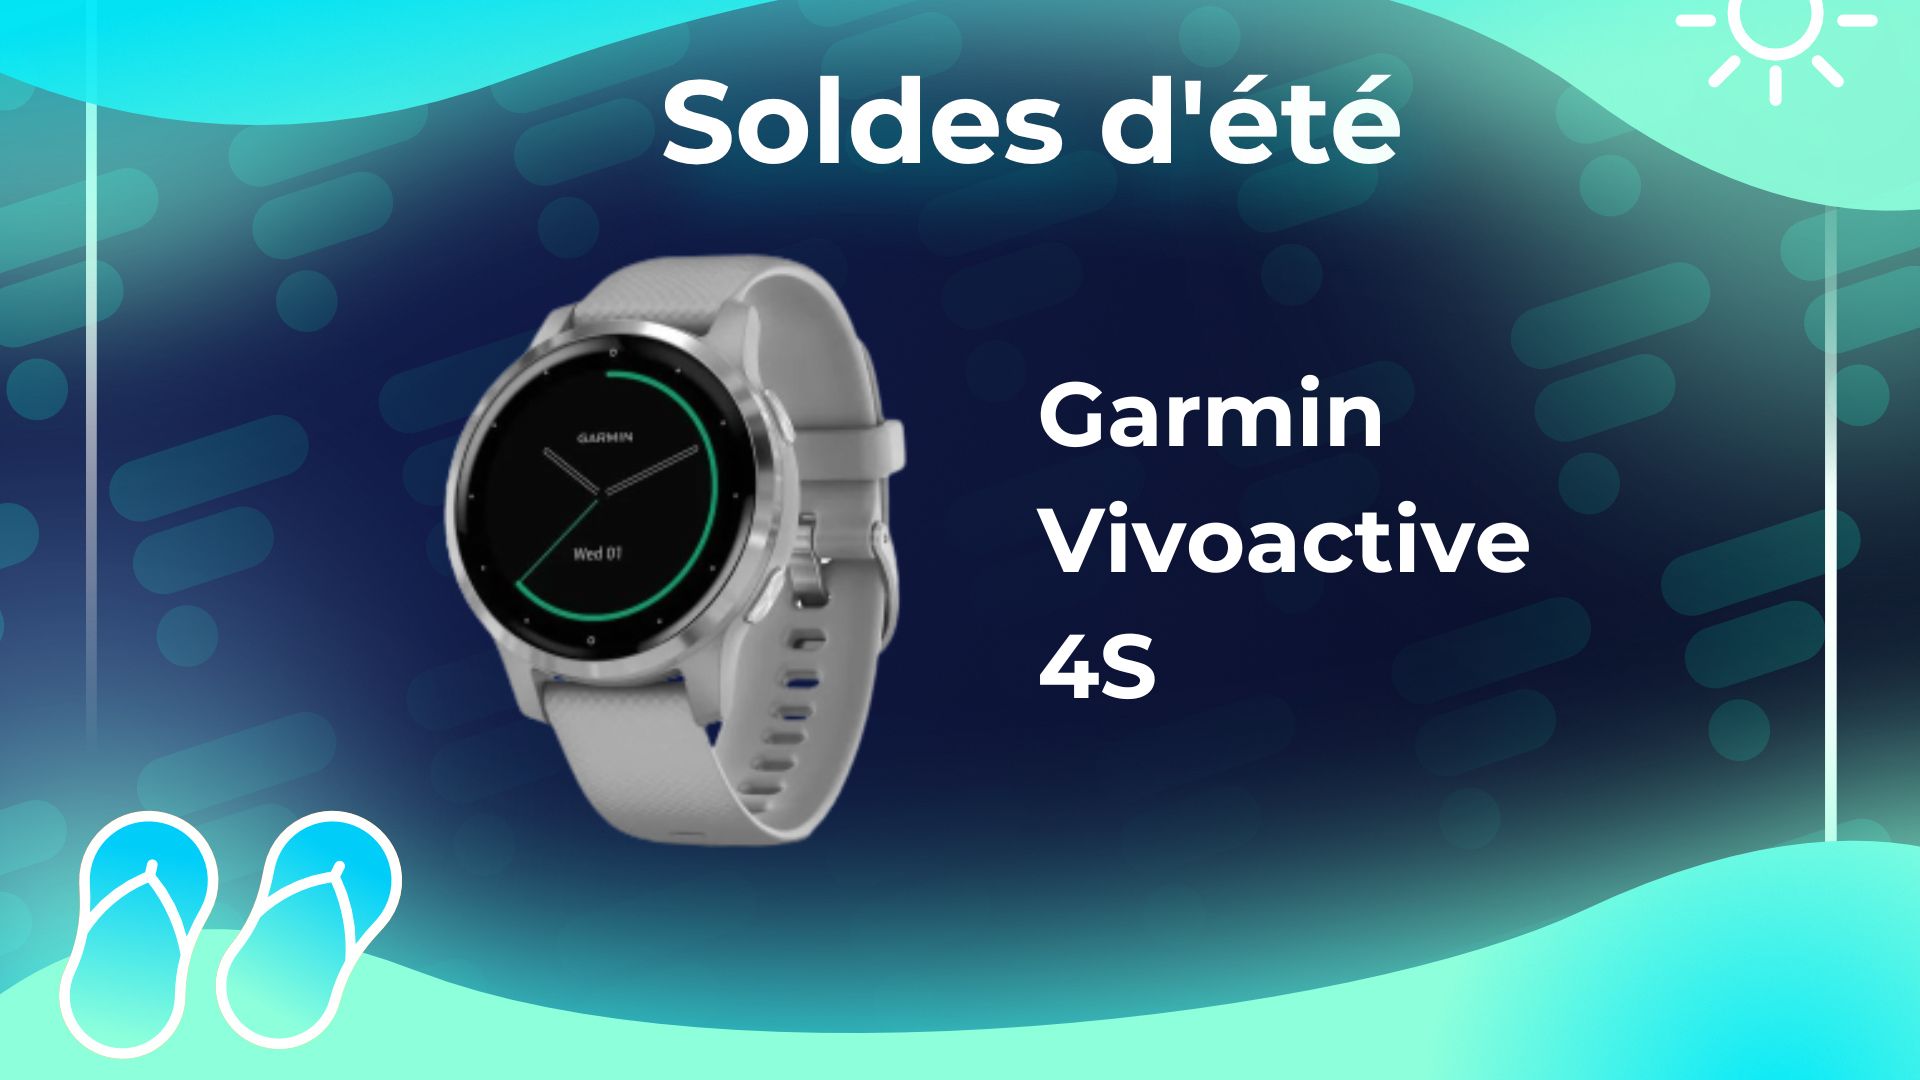 Garmin : économisez plus de 80 euros sur cette montre connectée sport  pendant les soldes